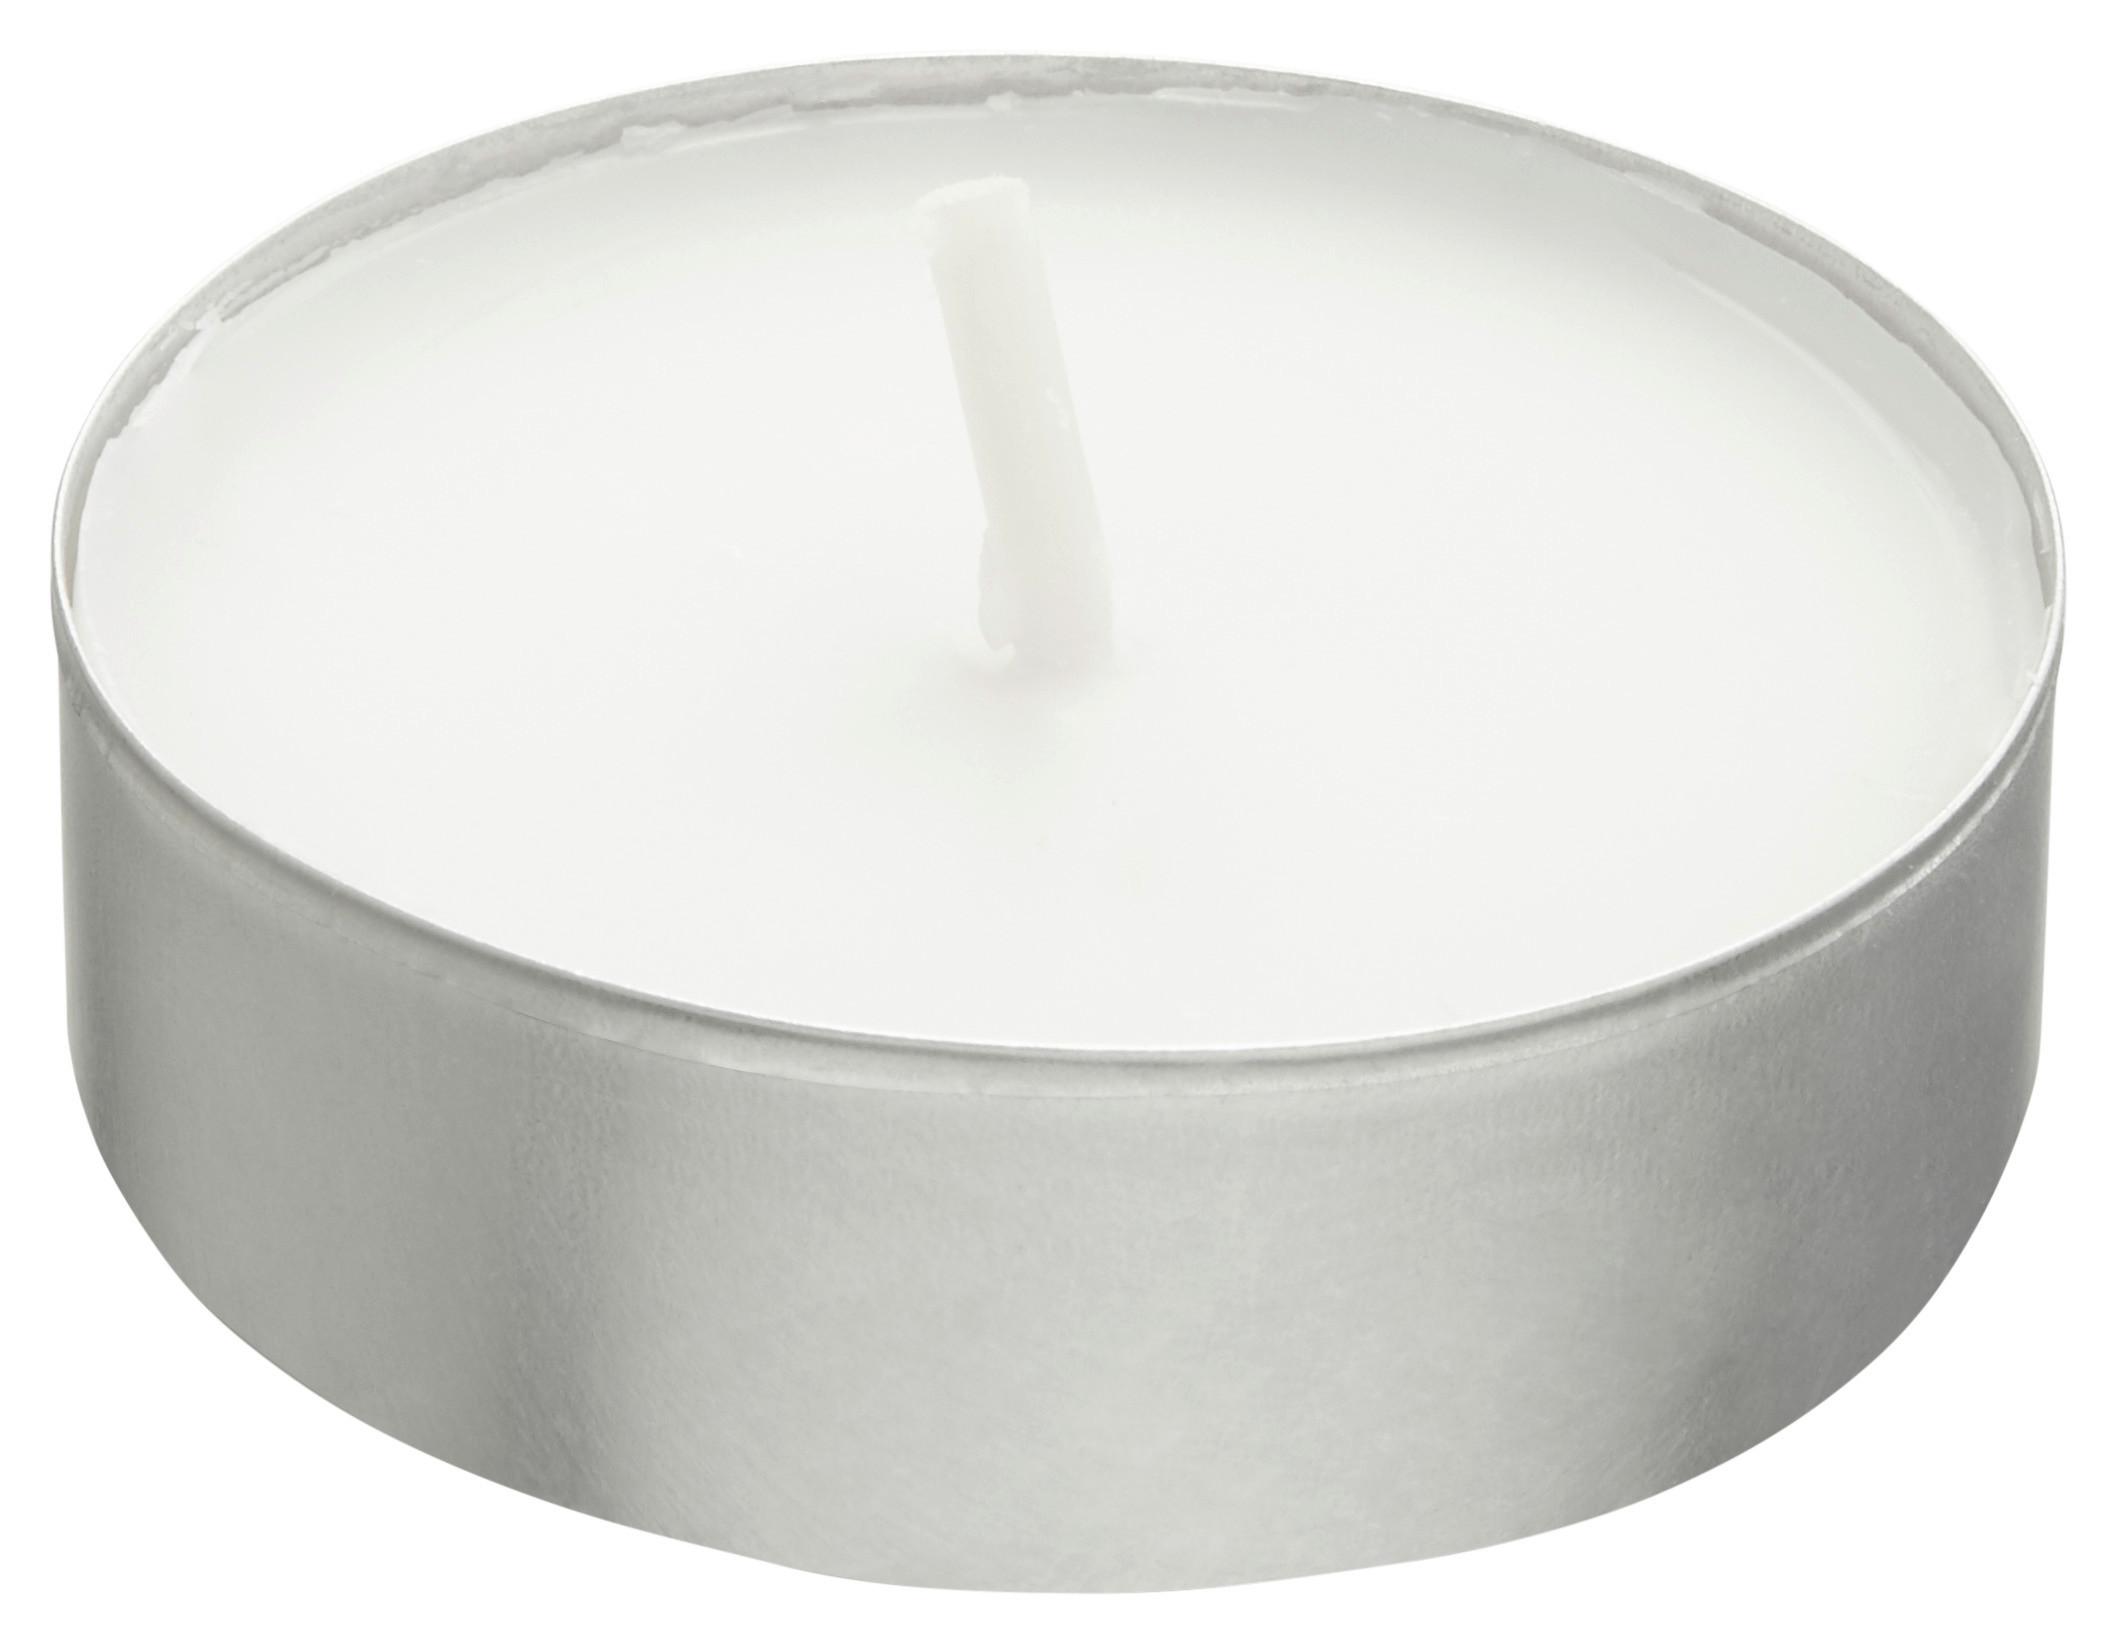 Teelicht Mia in Weiß 50er Pack - Alufarben/Weiß, KONVENTIONELL, Metall (3,9/1,3/2,4cm) - Modern Living